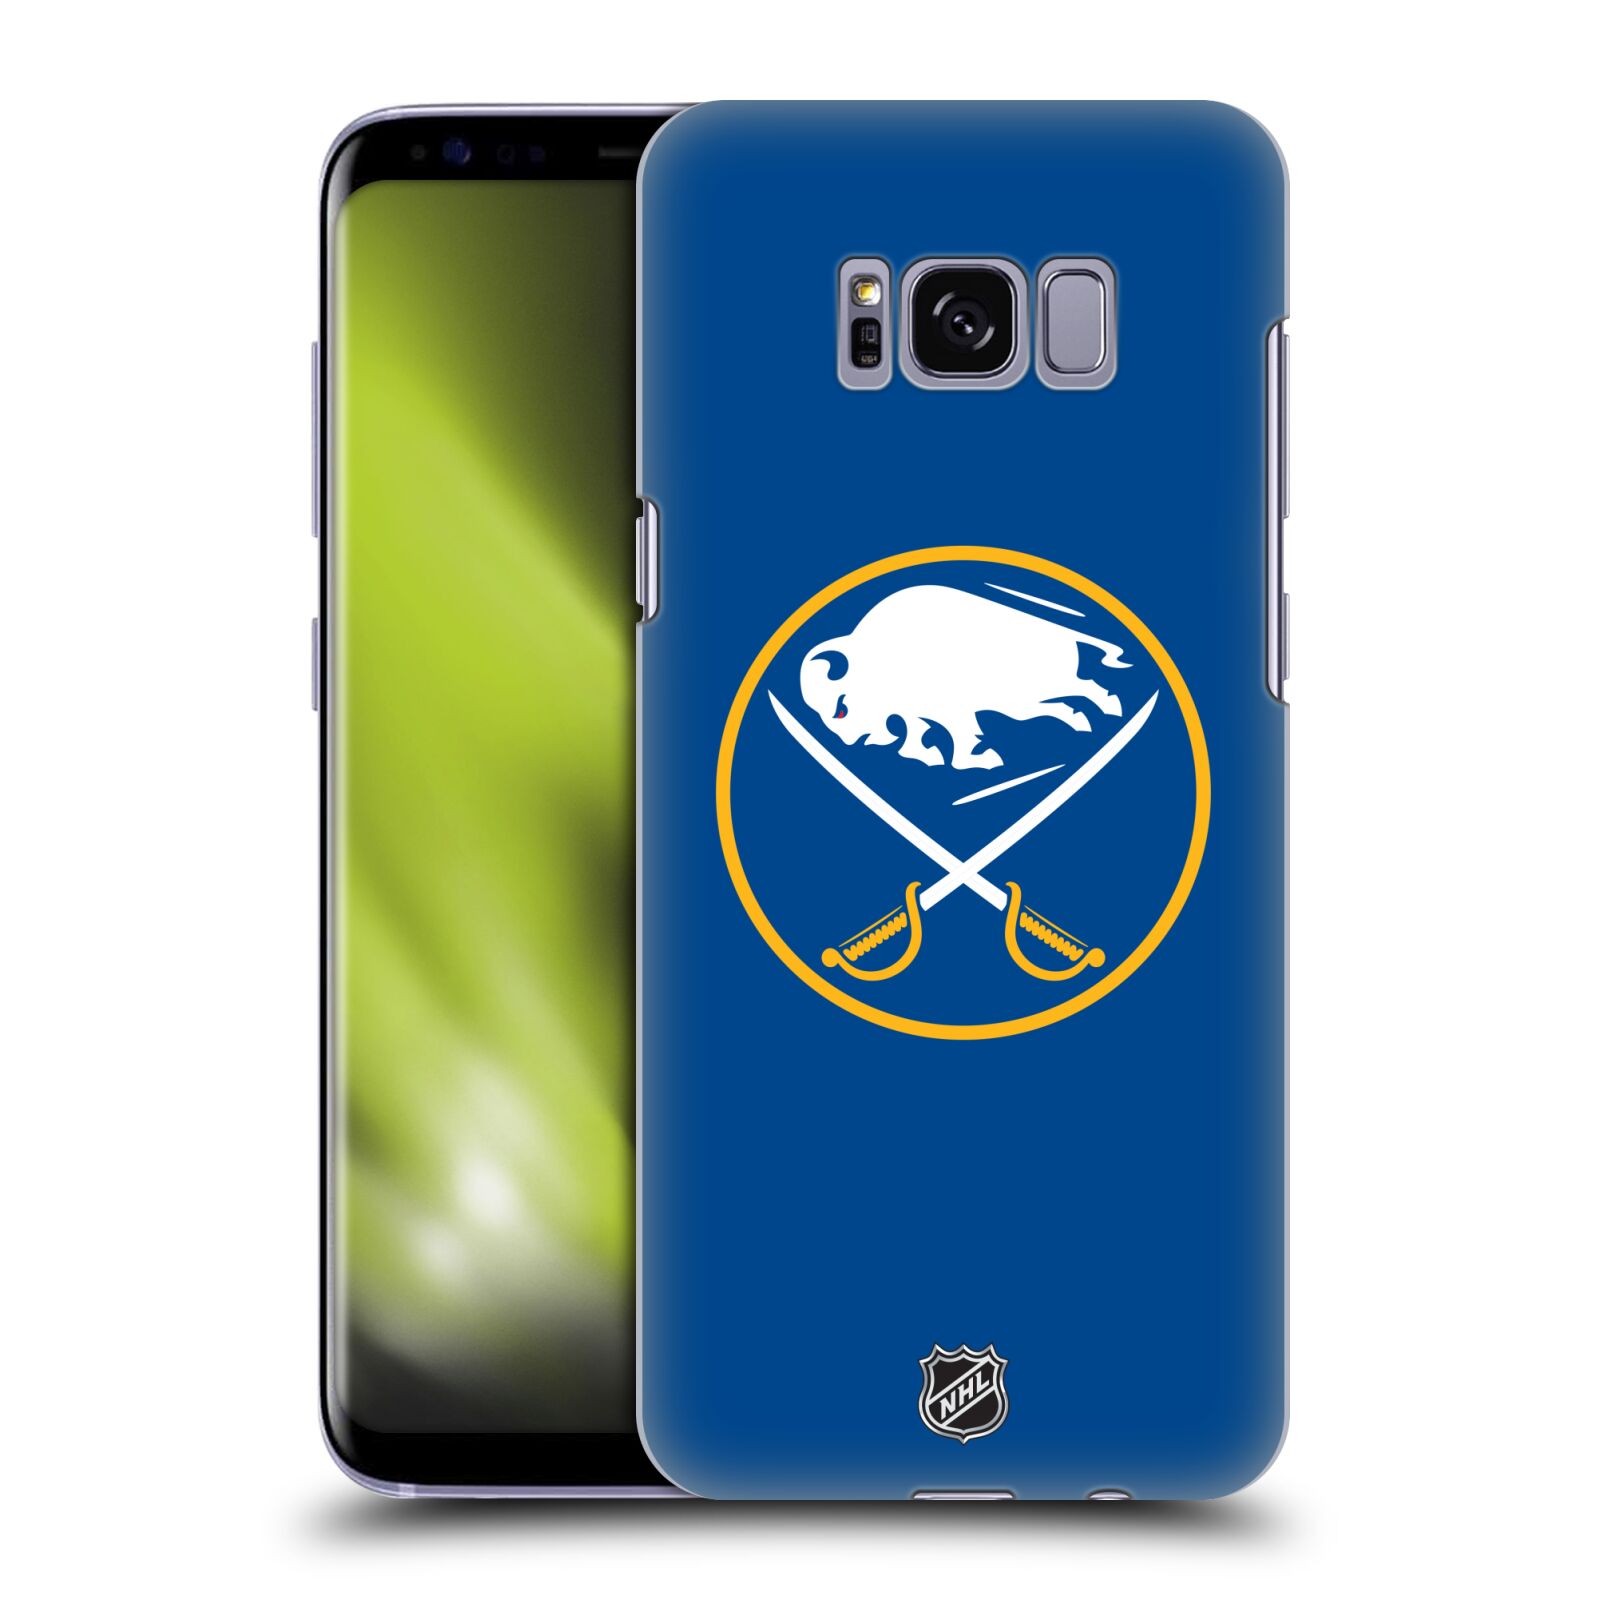 Pouzdro na mobil Samsung Galaxy S8 - HEAD CASE - Hokej NHL - Buffalo Sabres - modré pozadí